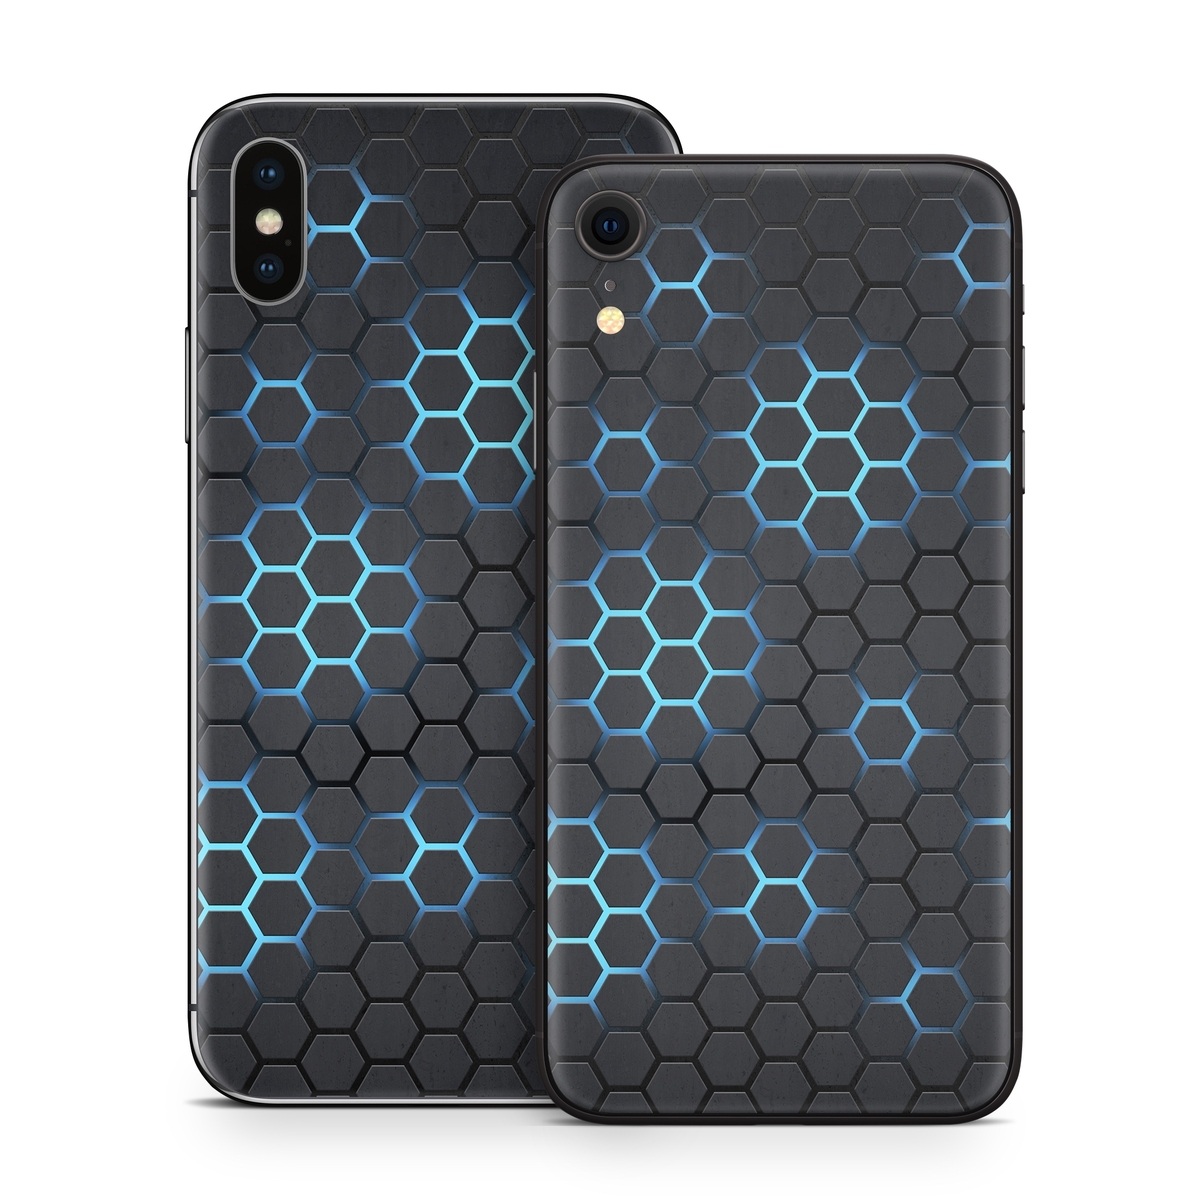 Exclusive iPhone X Carbon Fiber Design Cases